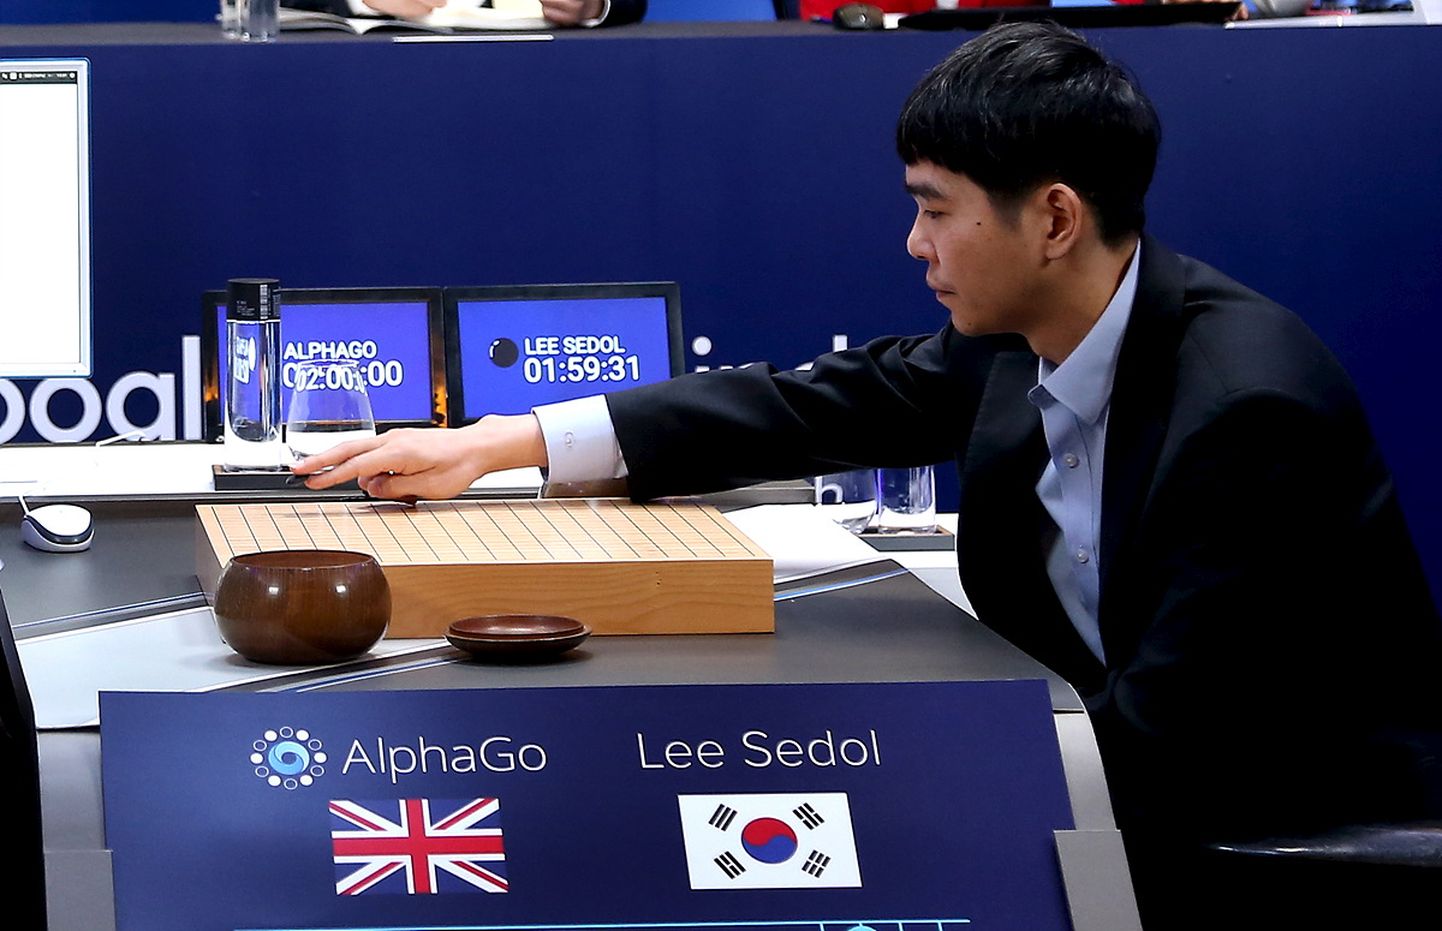 Maailma go-mängijate paremikku kuuluv Lee Sedol mängimas Google'i AlphaZero vastu.